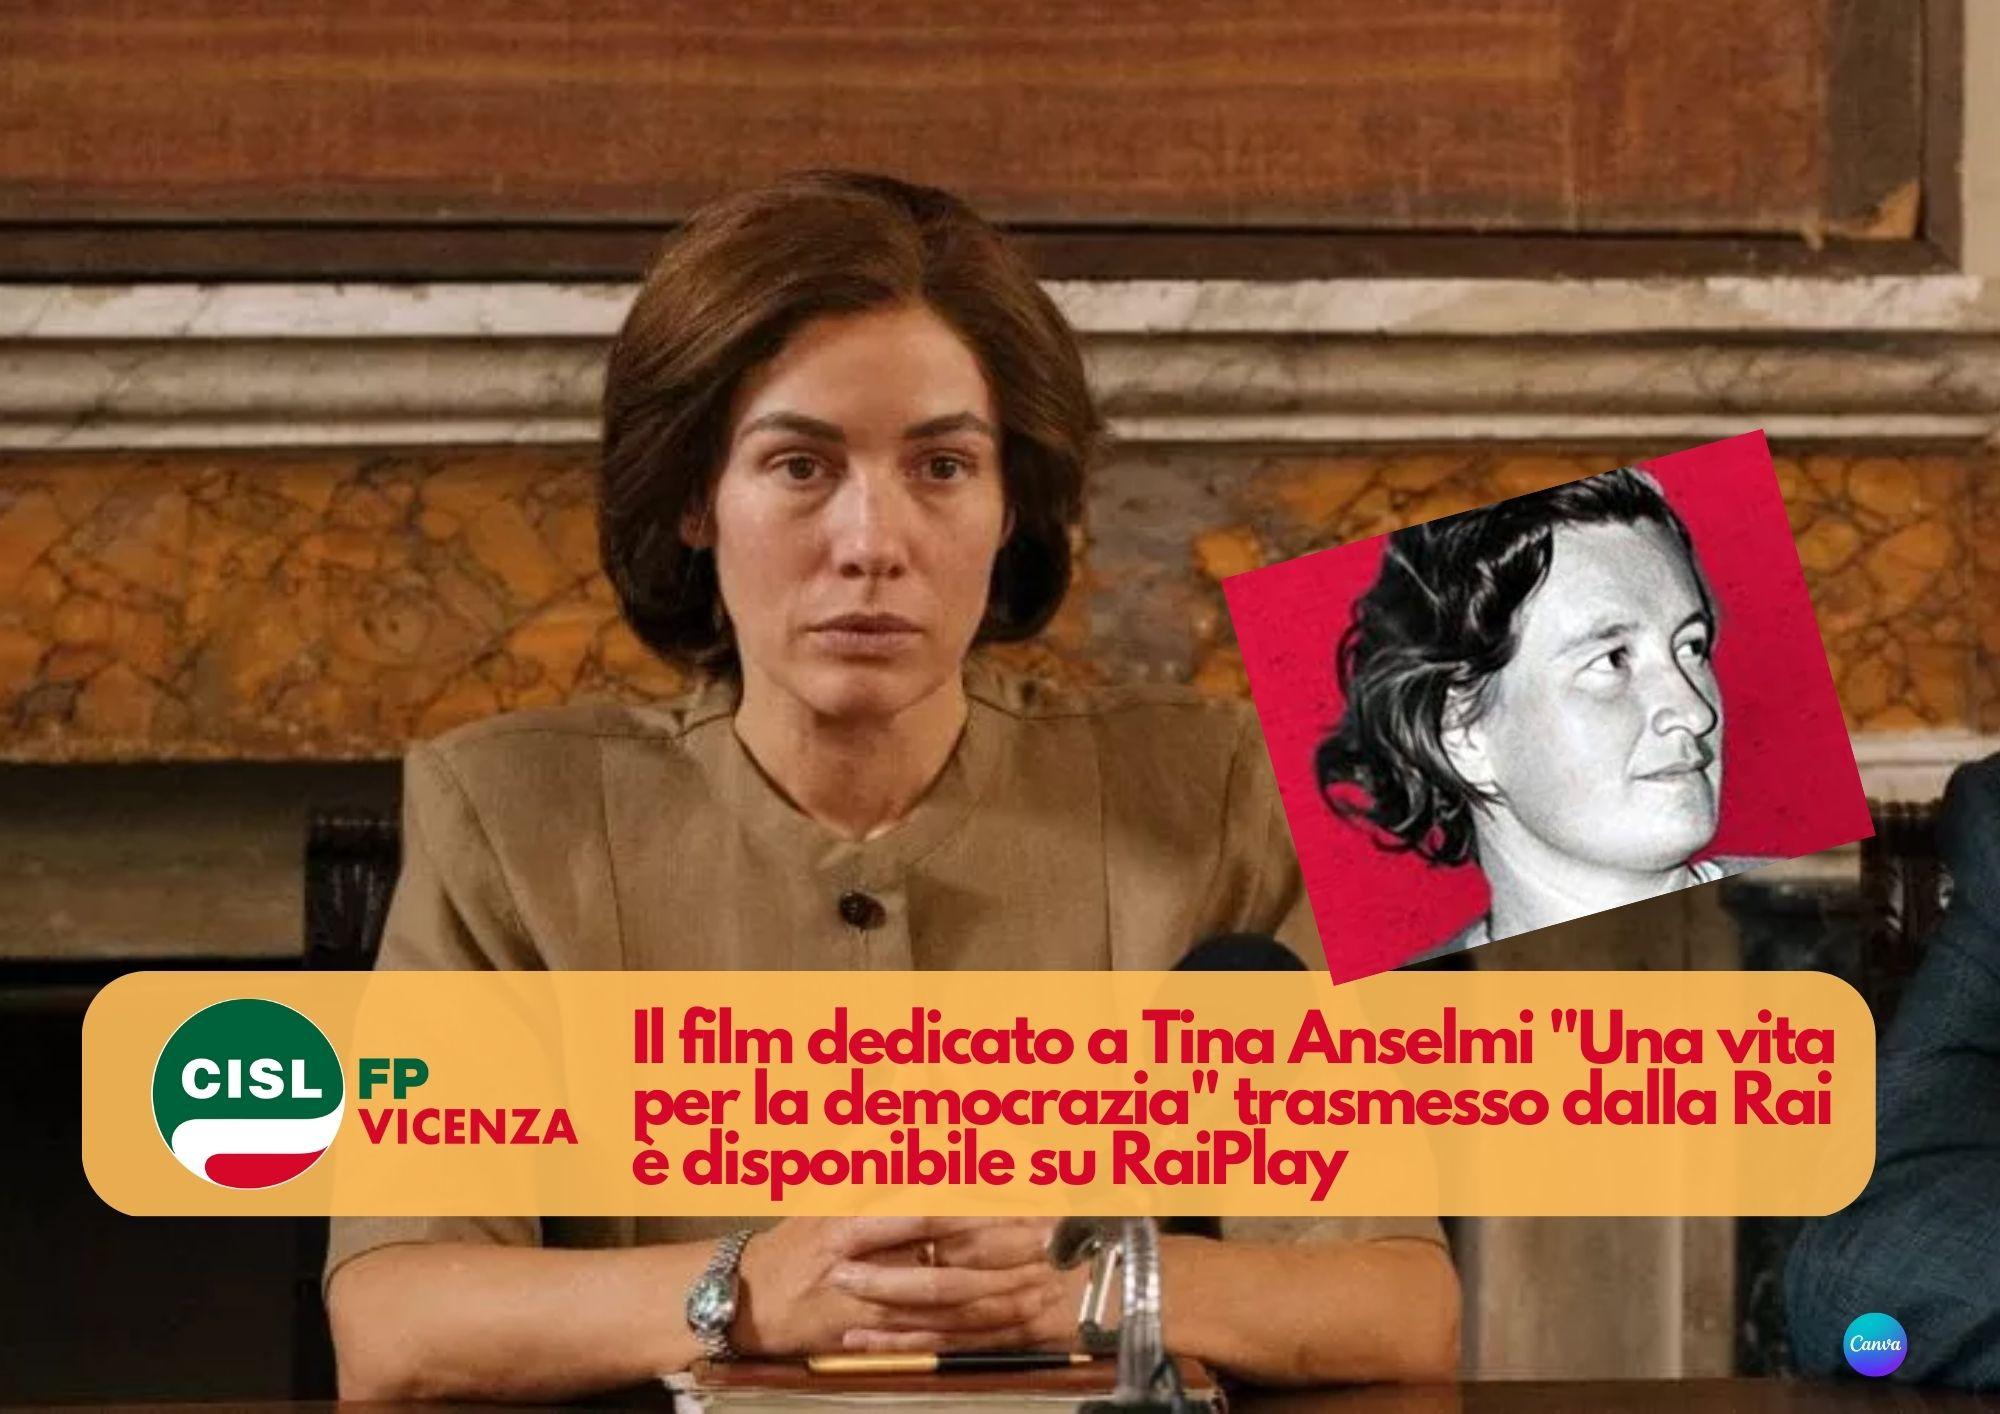 CISL FP Vicenza. A Tina Anselmi è dedicato il film di Luciano Manuzzi "Una vita per la democrazia"